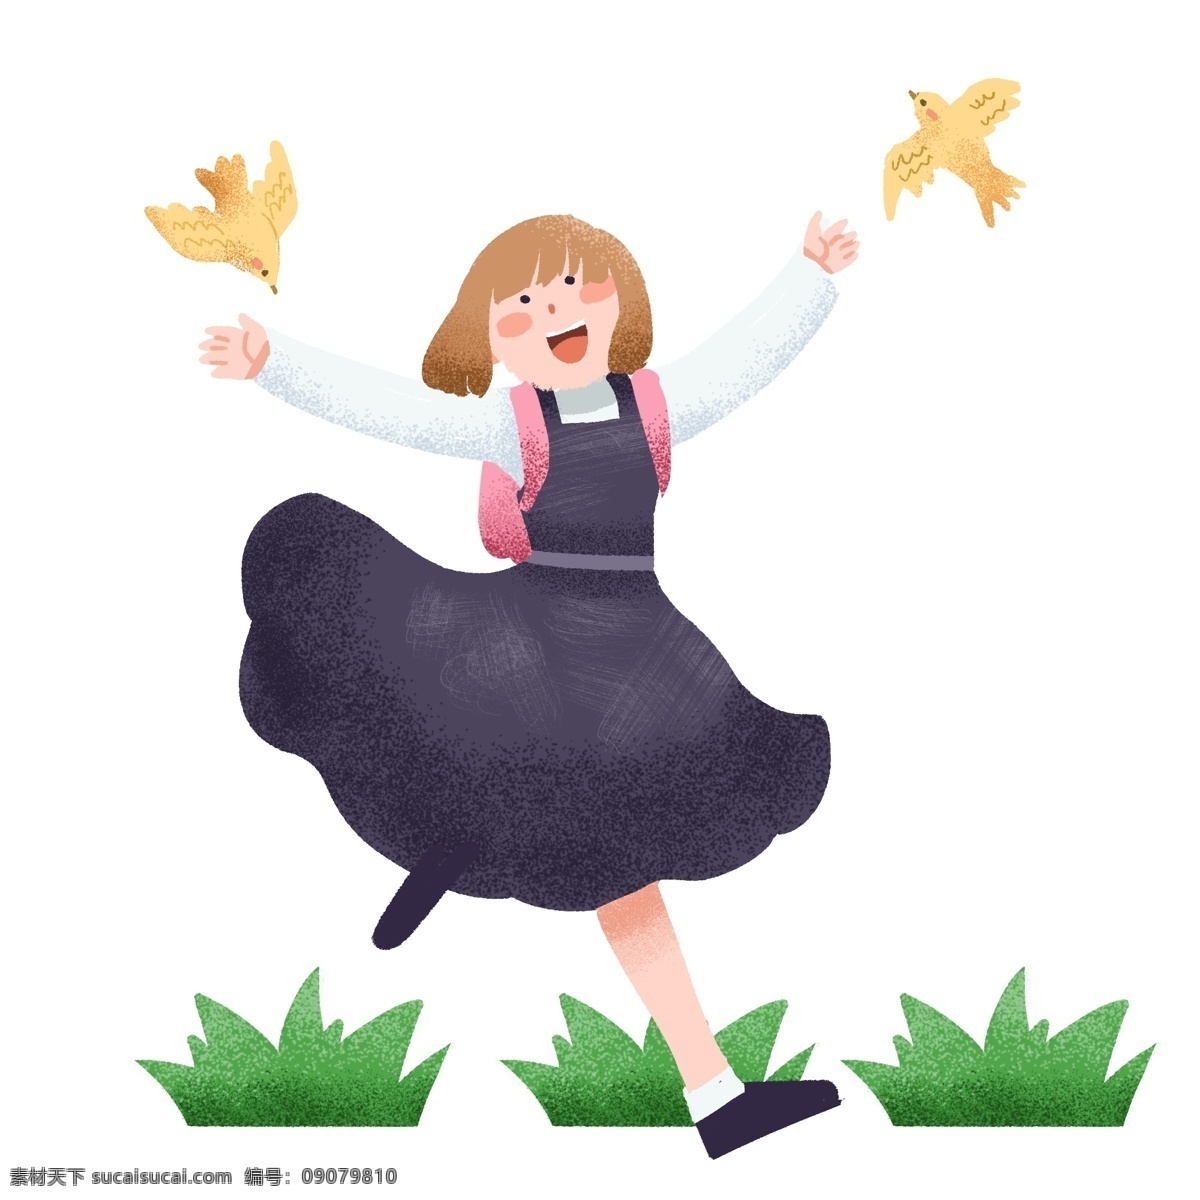 春季 踏青 开心 小女孩 插画 开心的小女孩 春游 绿色的植物 飞翔的小鸟 黄色小鸟 踏青人物插画